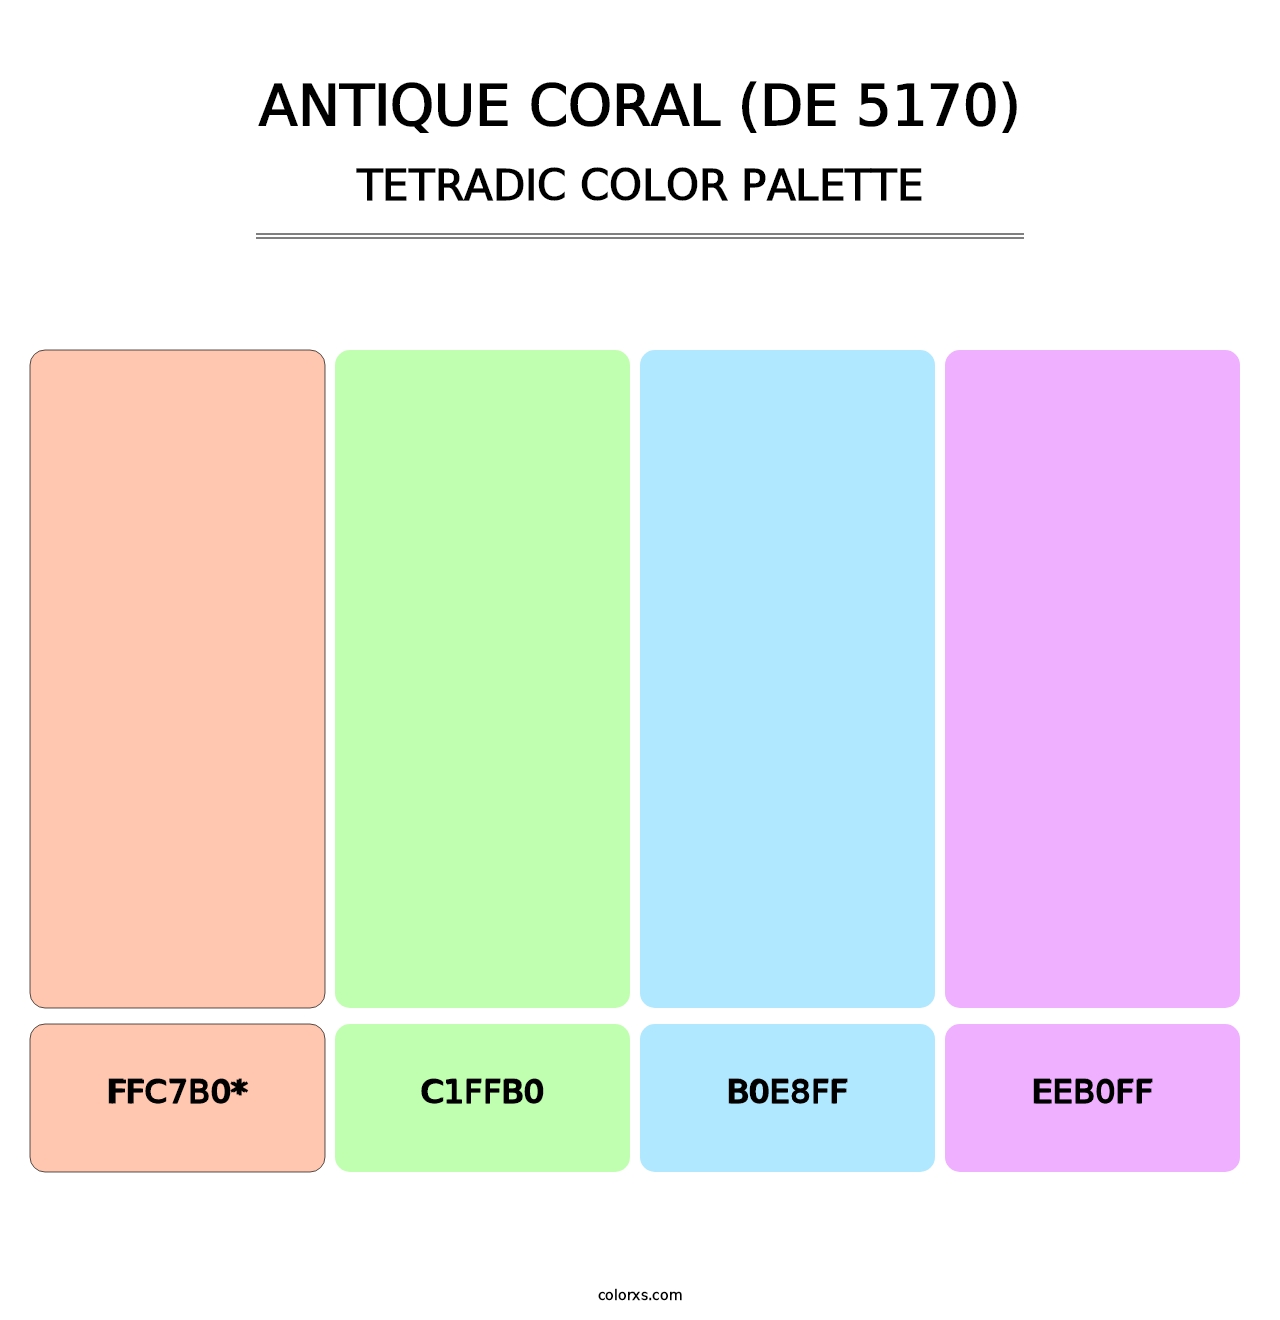 Antique Coral (DE 5170) - Tetradic Color Palette